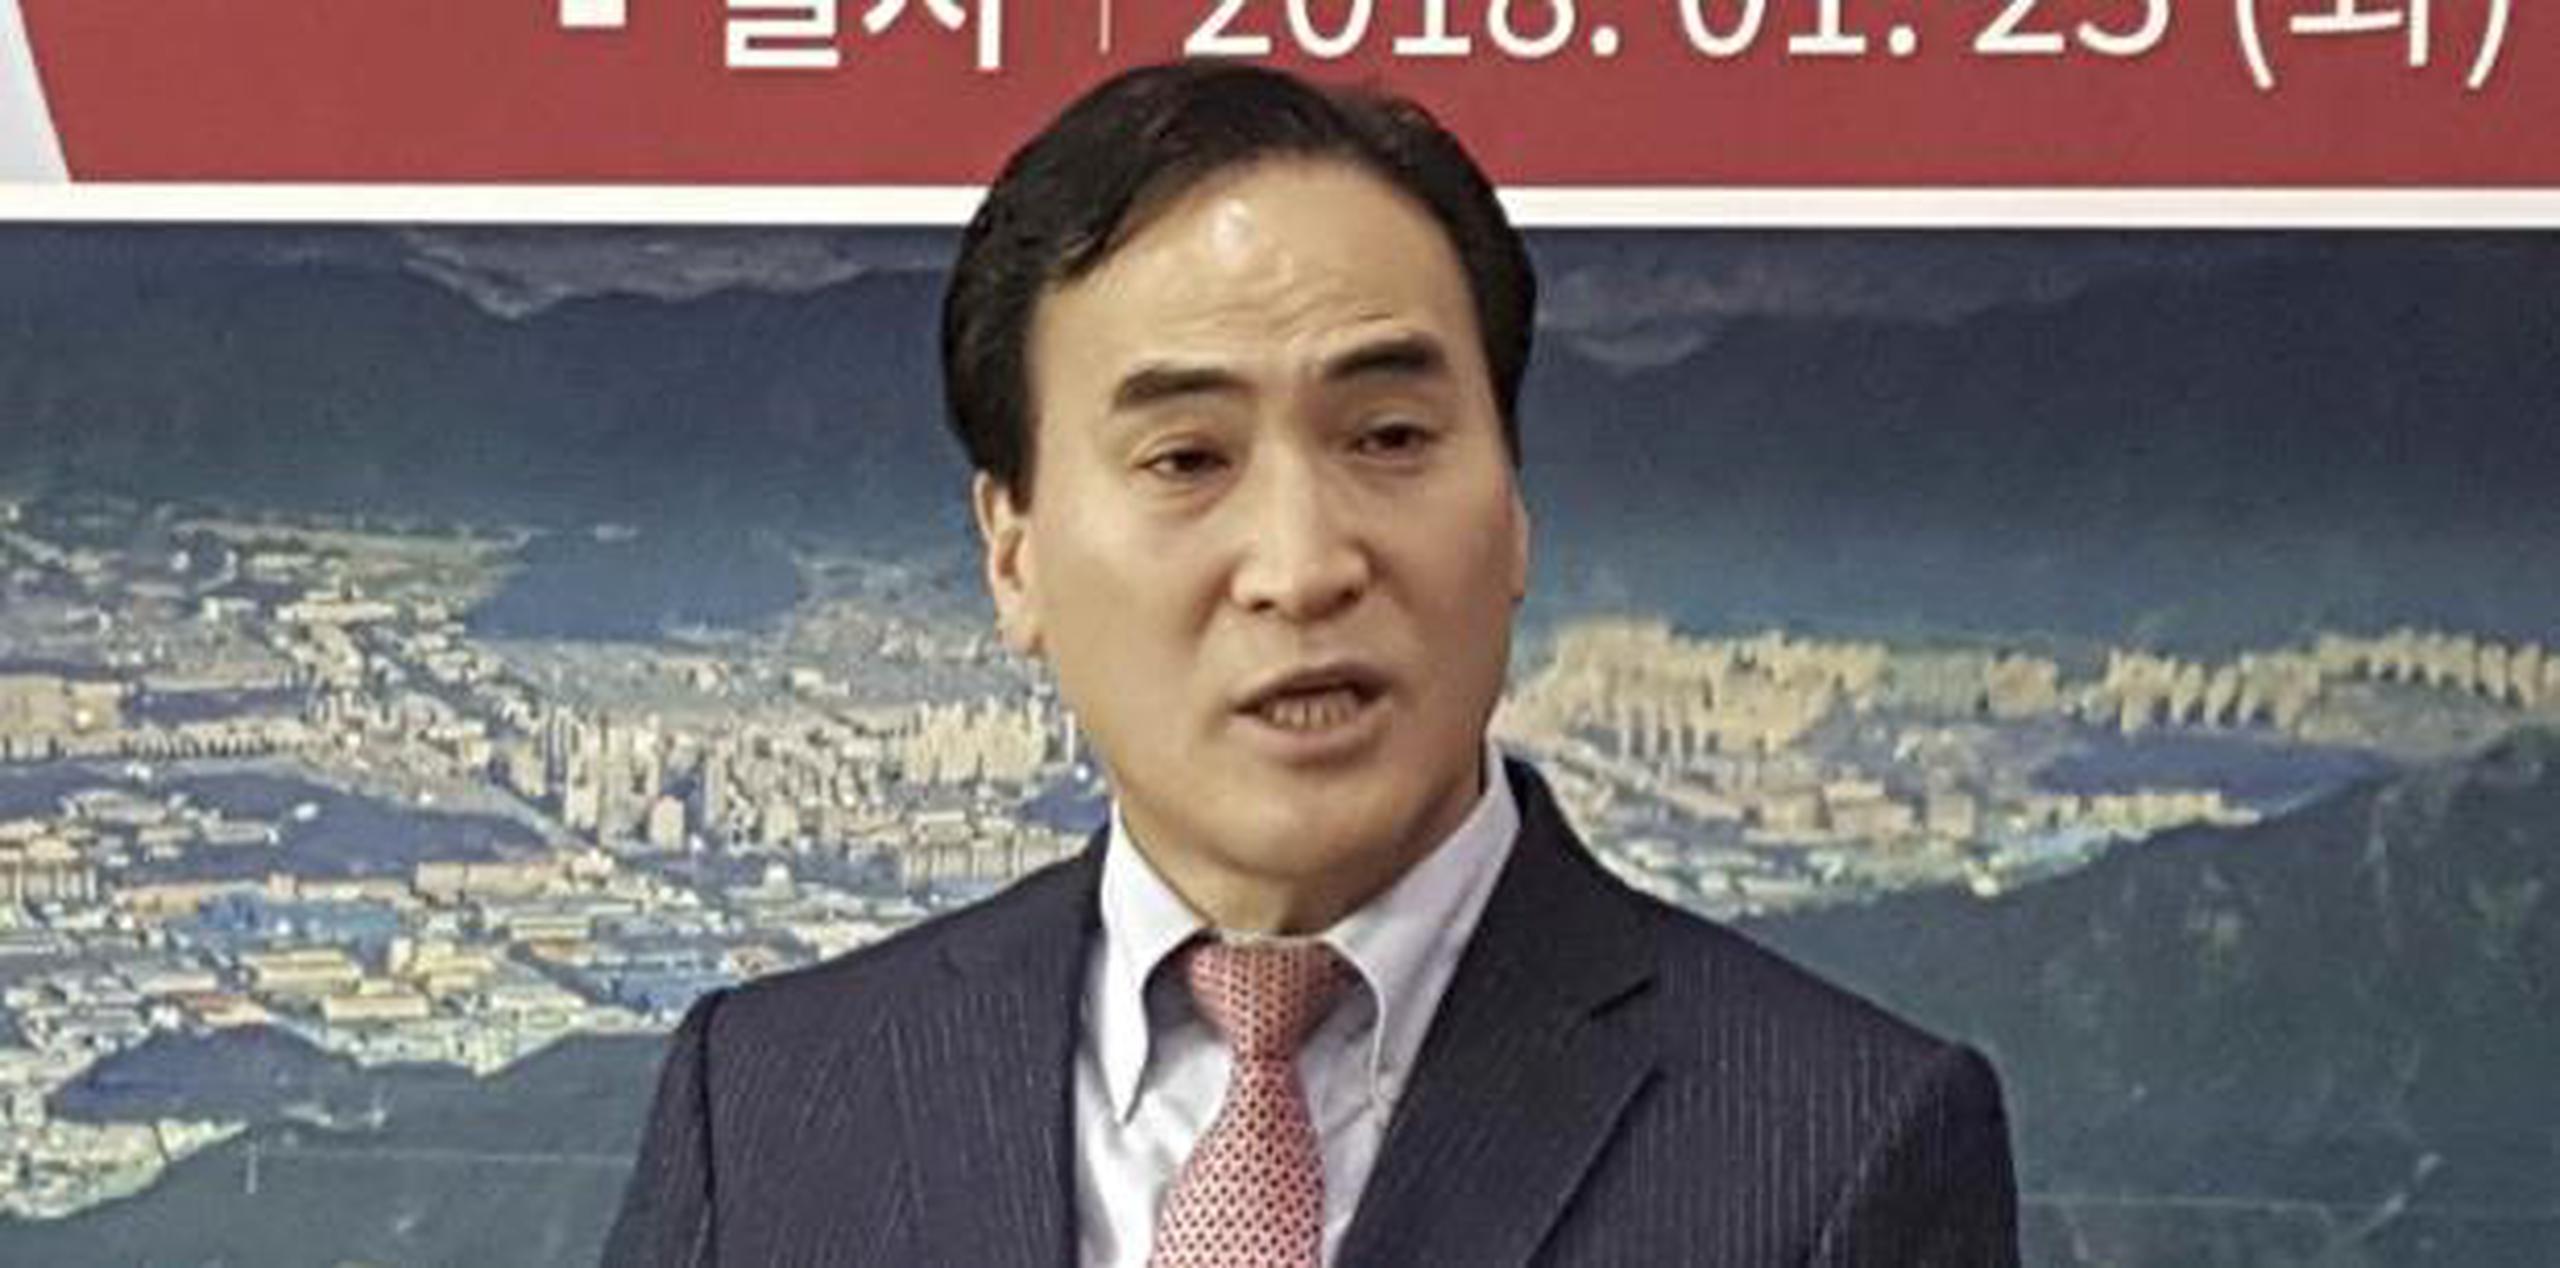 Kim Jong Yang ocupará el puesto hasta el 2020. (Kang Kyung-kook / Newsis vía AP)